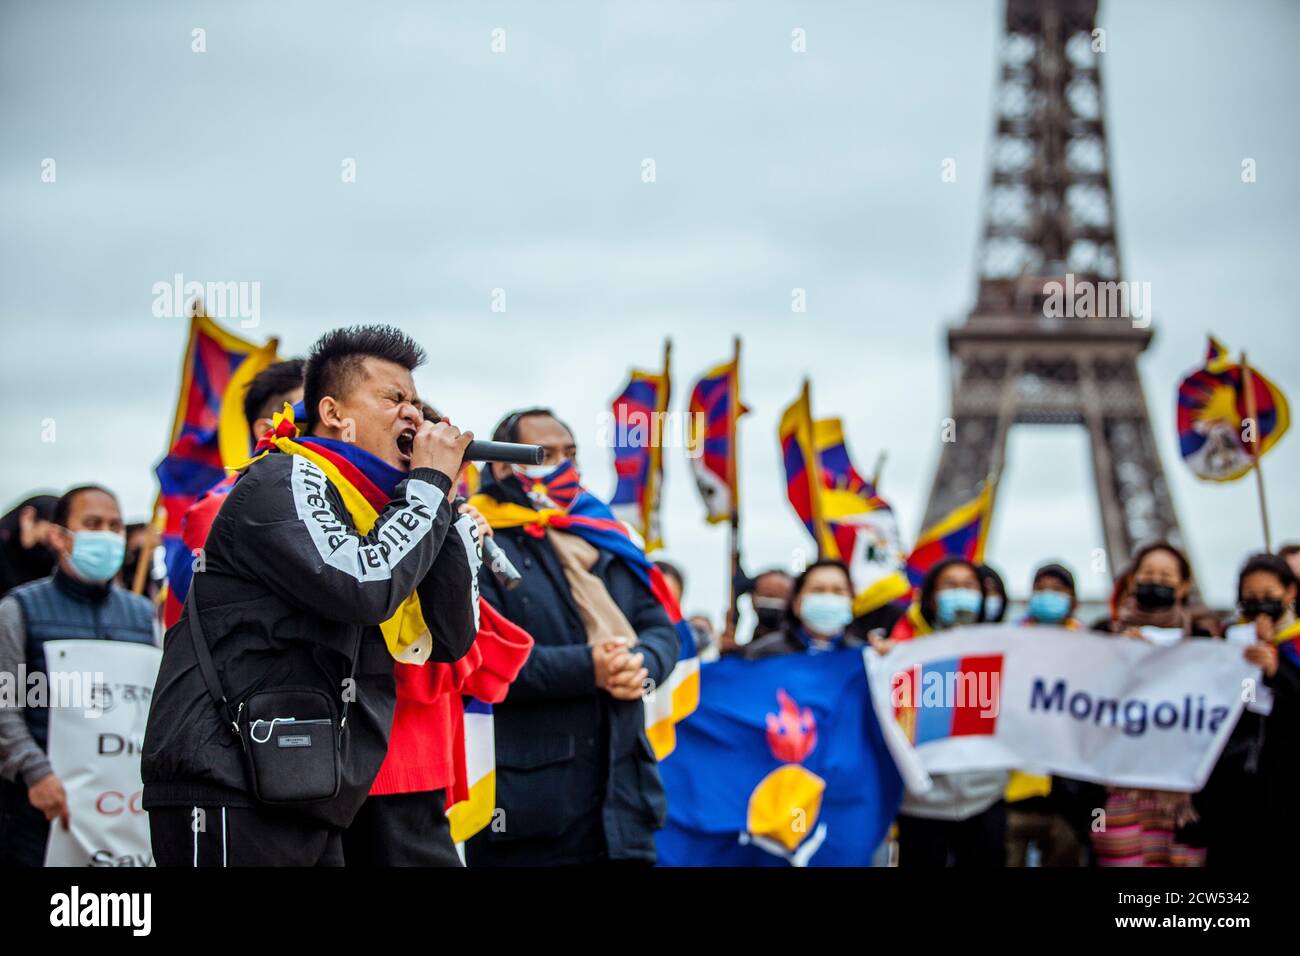 Tibetani, uiguri, taiwanesi, vietnamiti, mongoli, Hong Kongers e sostenitori si sono riuniti per protestare contro la brutalità e le violazioni dei diritti umani perpetrate dal governo cinese il 27 settembre 1987, centinaia di tibetani hanno organizzato una manifestazione a Lhasa. Nel clamp down, la polizia cinese ha aperto il fuoco, uccidendo e colpendo criticamente molti sul posto e imprigionando almeno 2,500. Parigi, 27 settembre 2020 Foto Stock